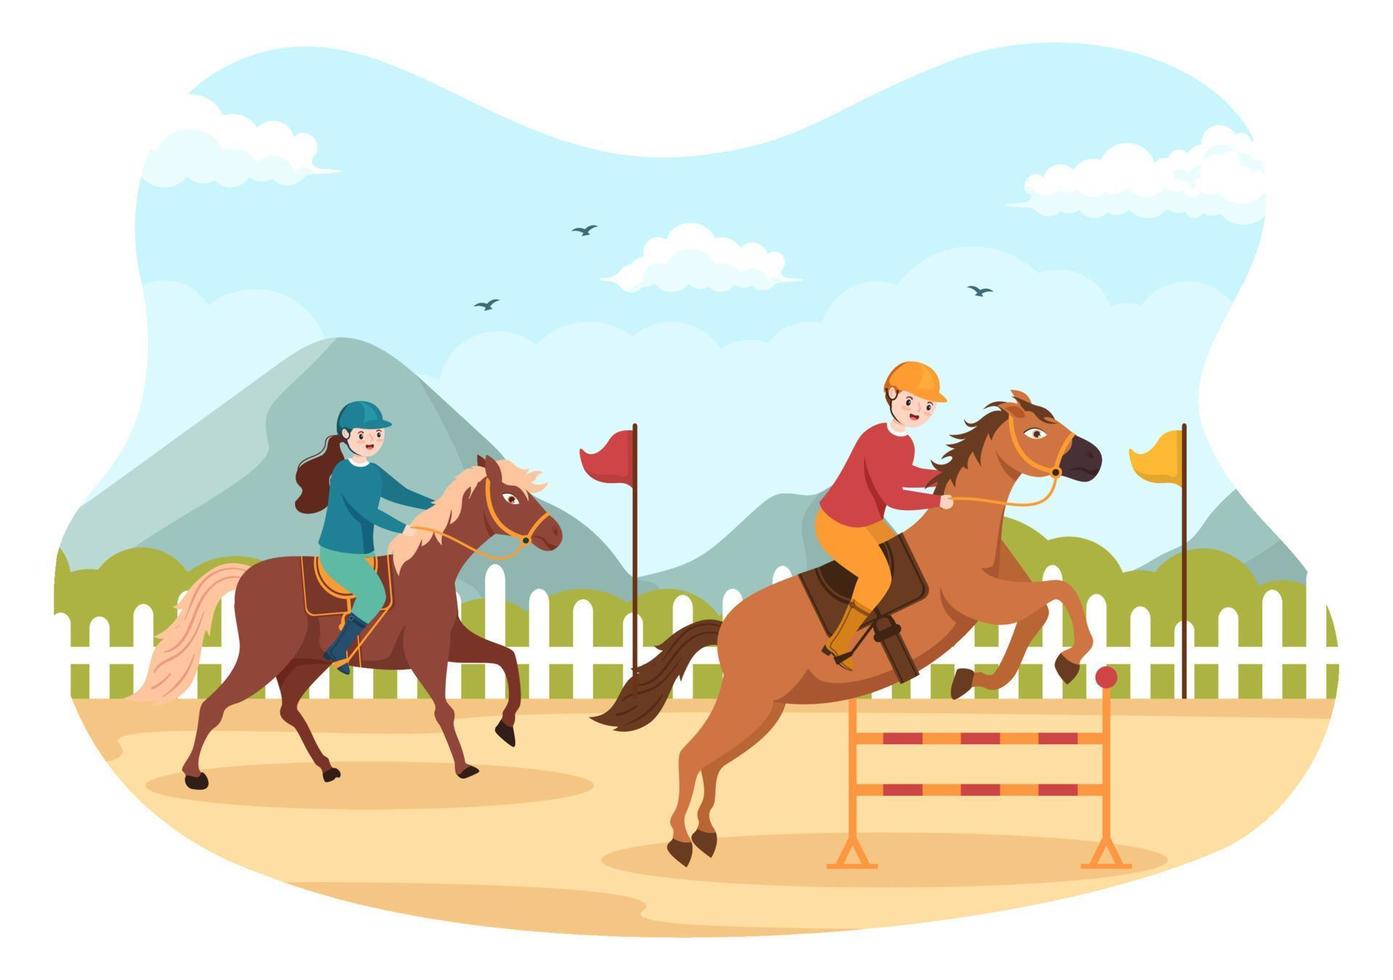 paardenrace cartoon afbeelding met karakters mensen die competitie sport kampioenschappen of paardensport doen in de renbaan vector